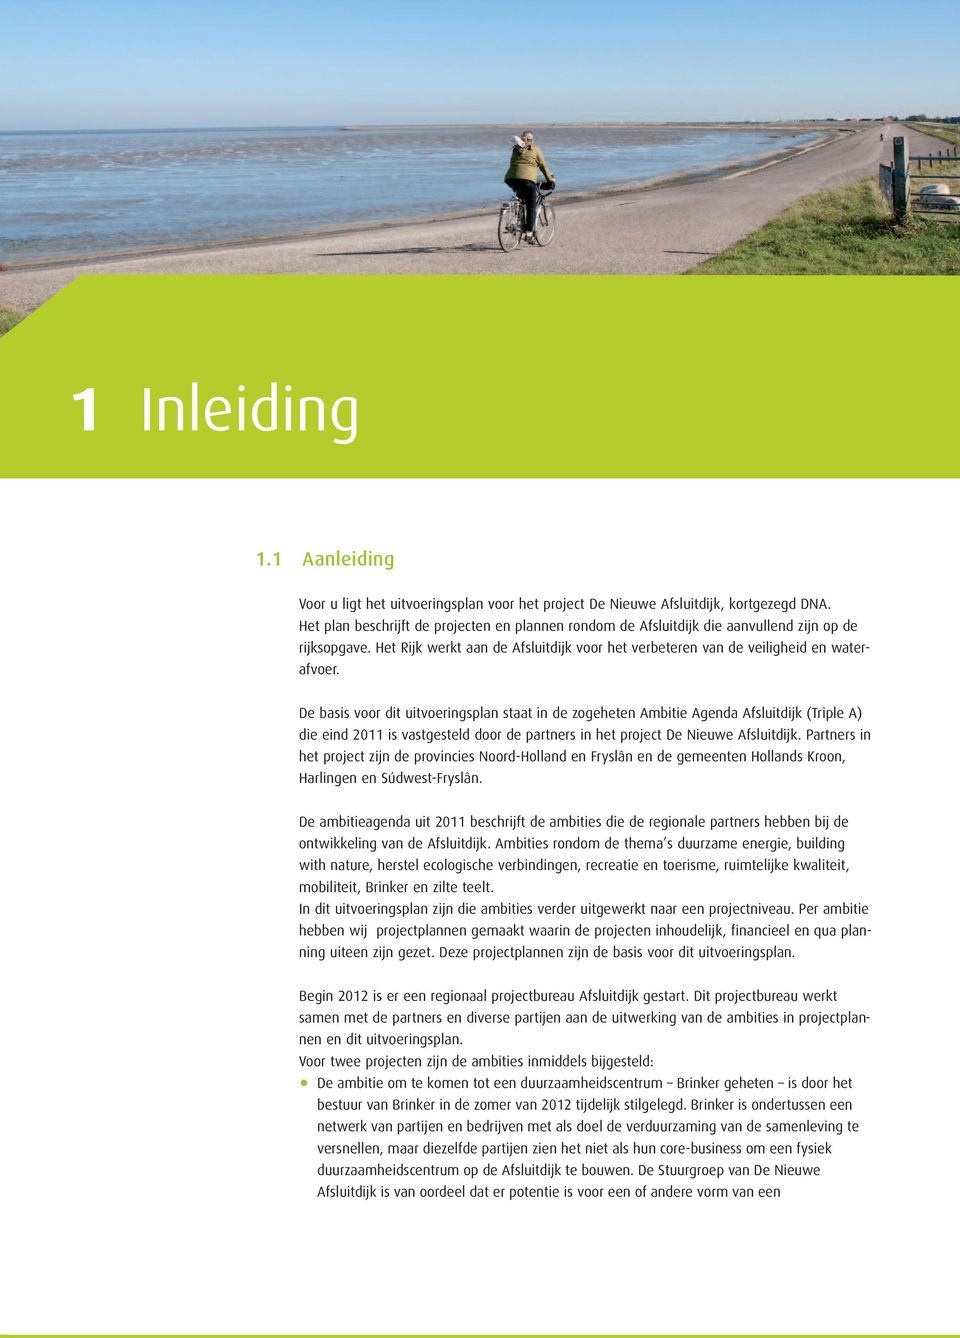 De basis voor dit uitvoeringsplan staat in de zogeheten Ambitie Agenda Afsluitdijk (Triple A) die eind 2011 is vastgesteld door de partners in het project De Nieuwe Afsluitdijk.